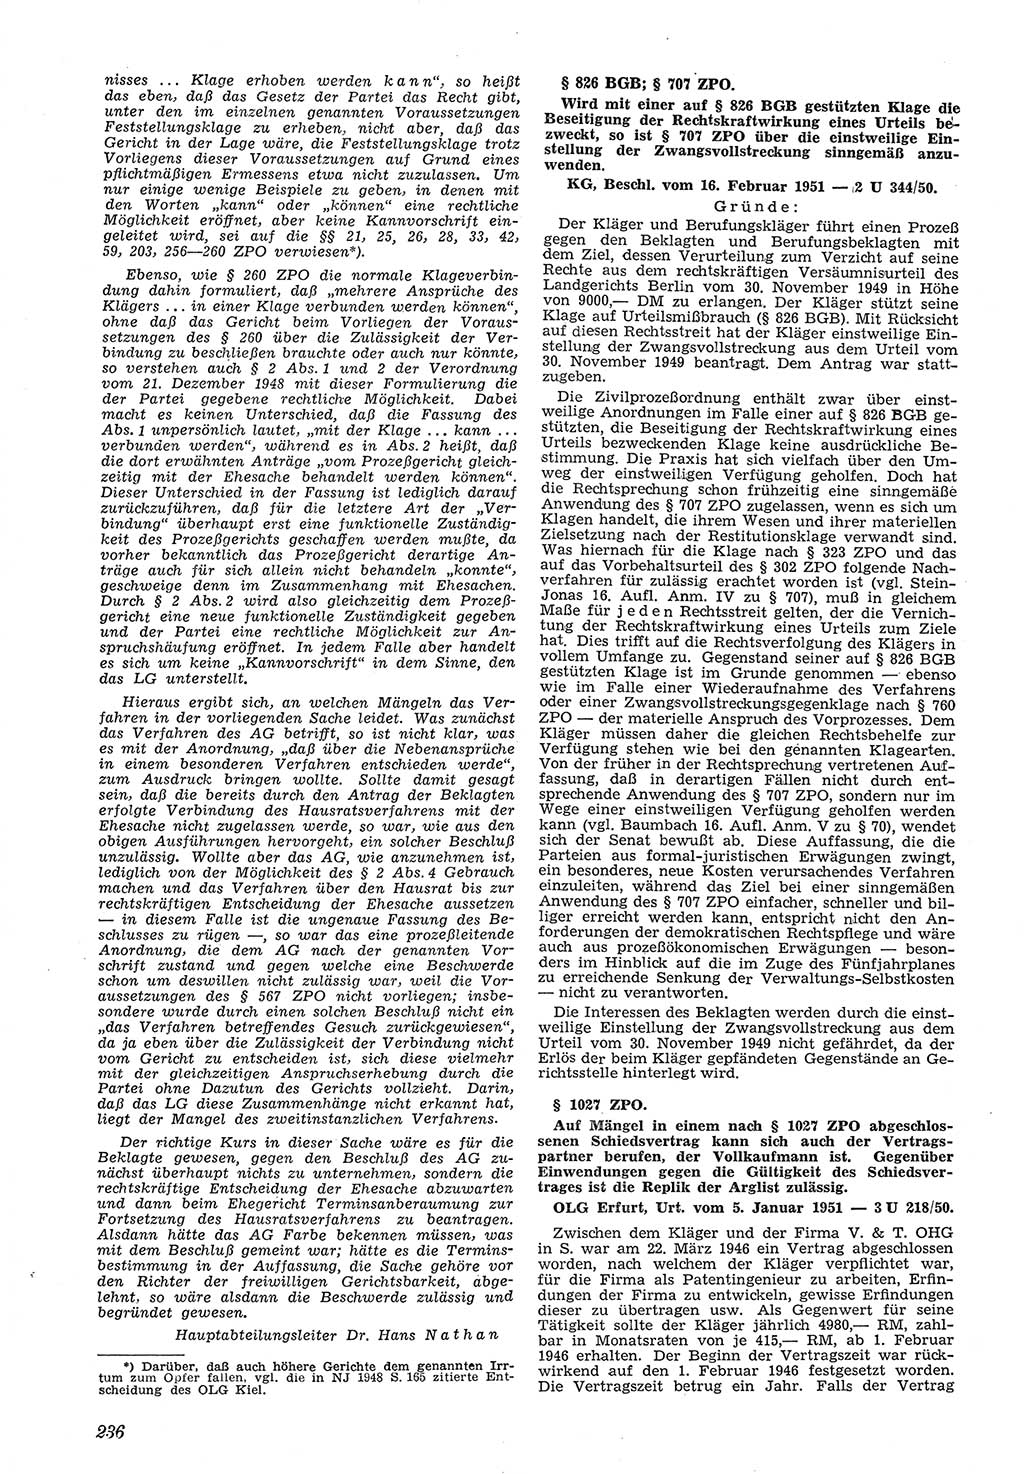 Neue Justiz (NJ), Zeitschrift für Recht und Rechtswissenschaft [Deutsche Demokratische Republik (DDR)], 5. Jahrgang 1951, Seite 236 (NJ DDR 1951, S. 236)